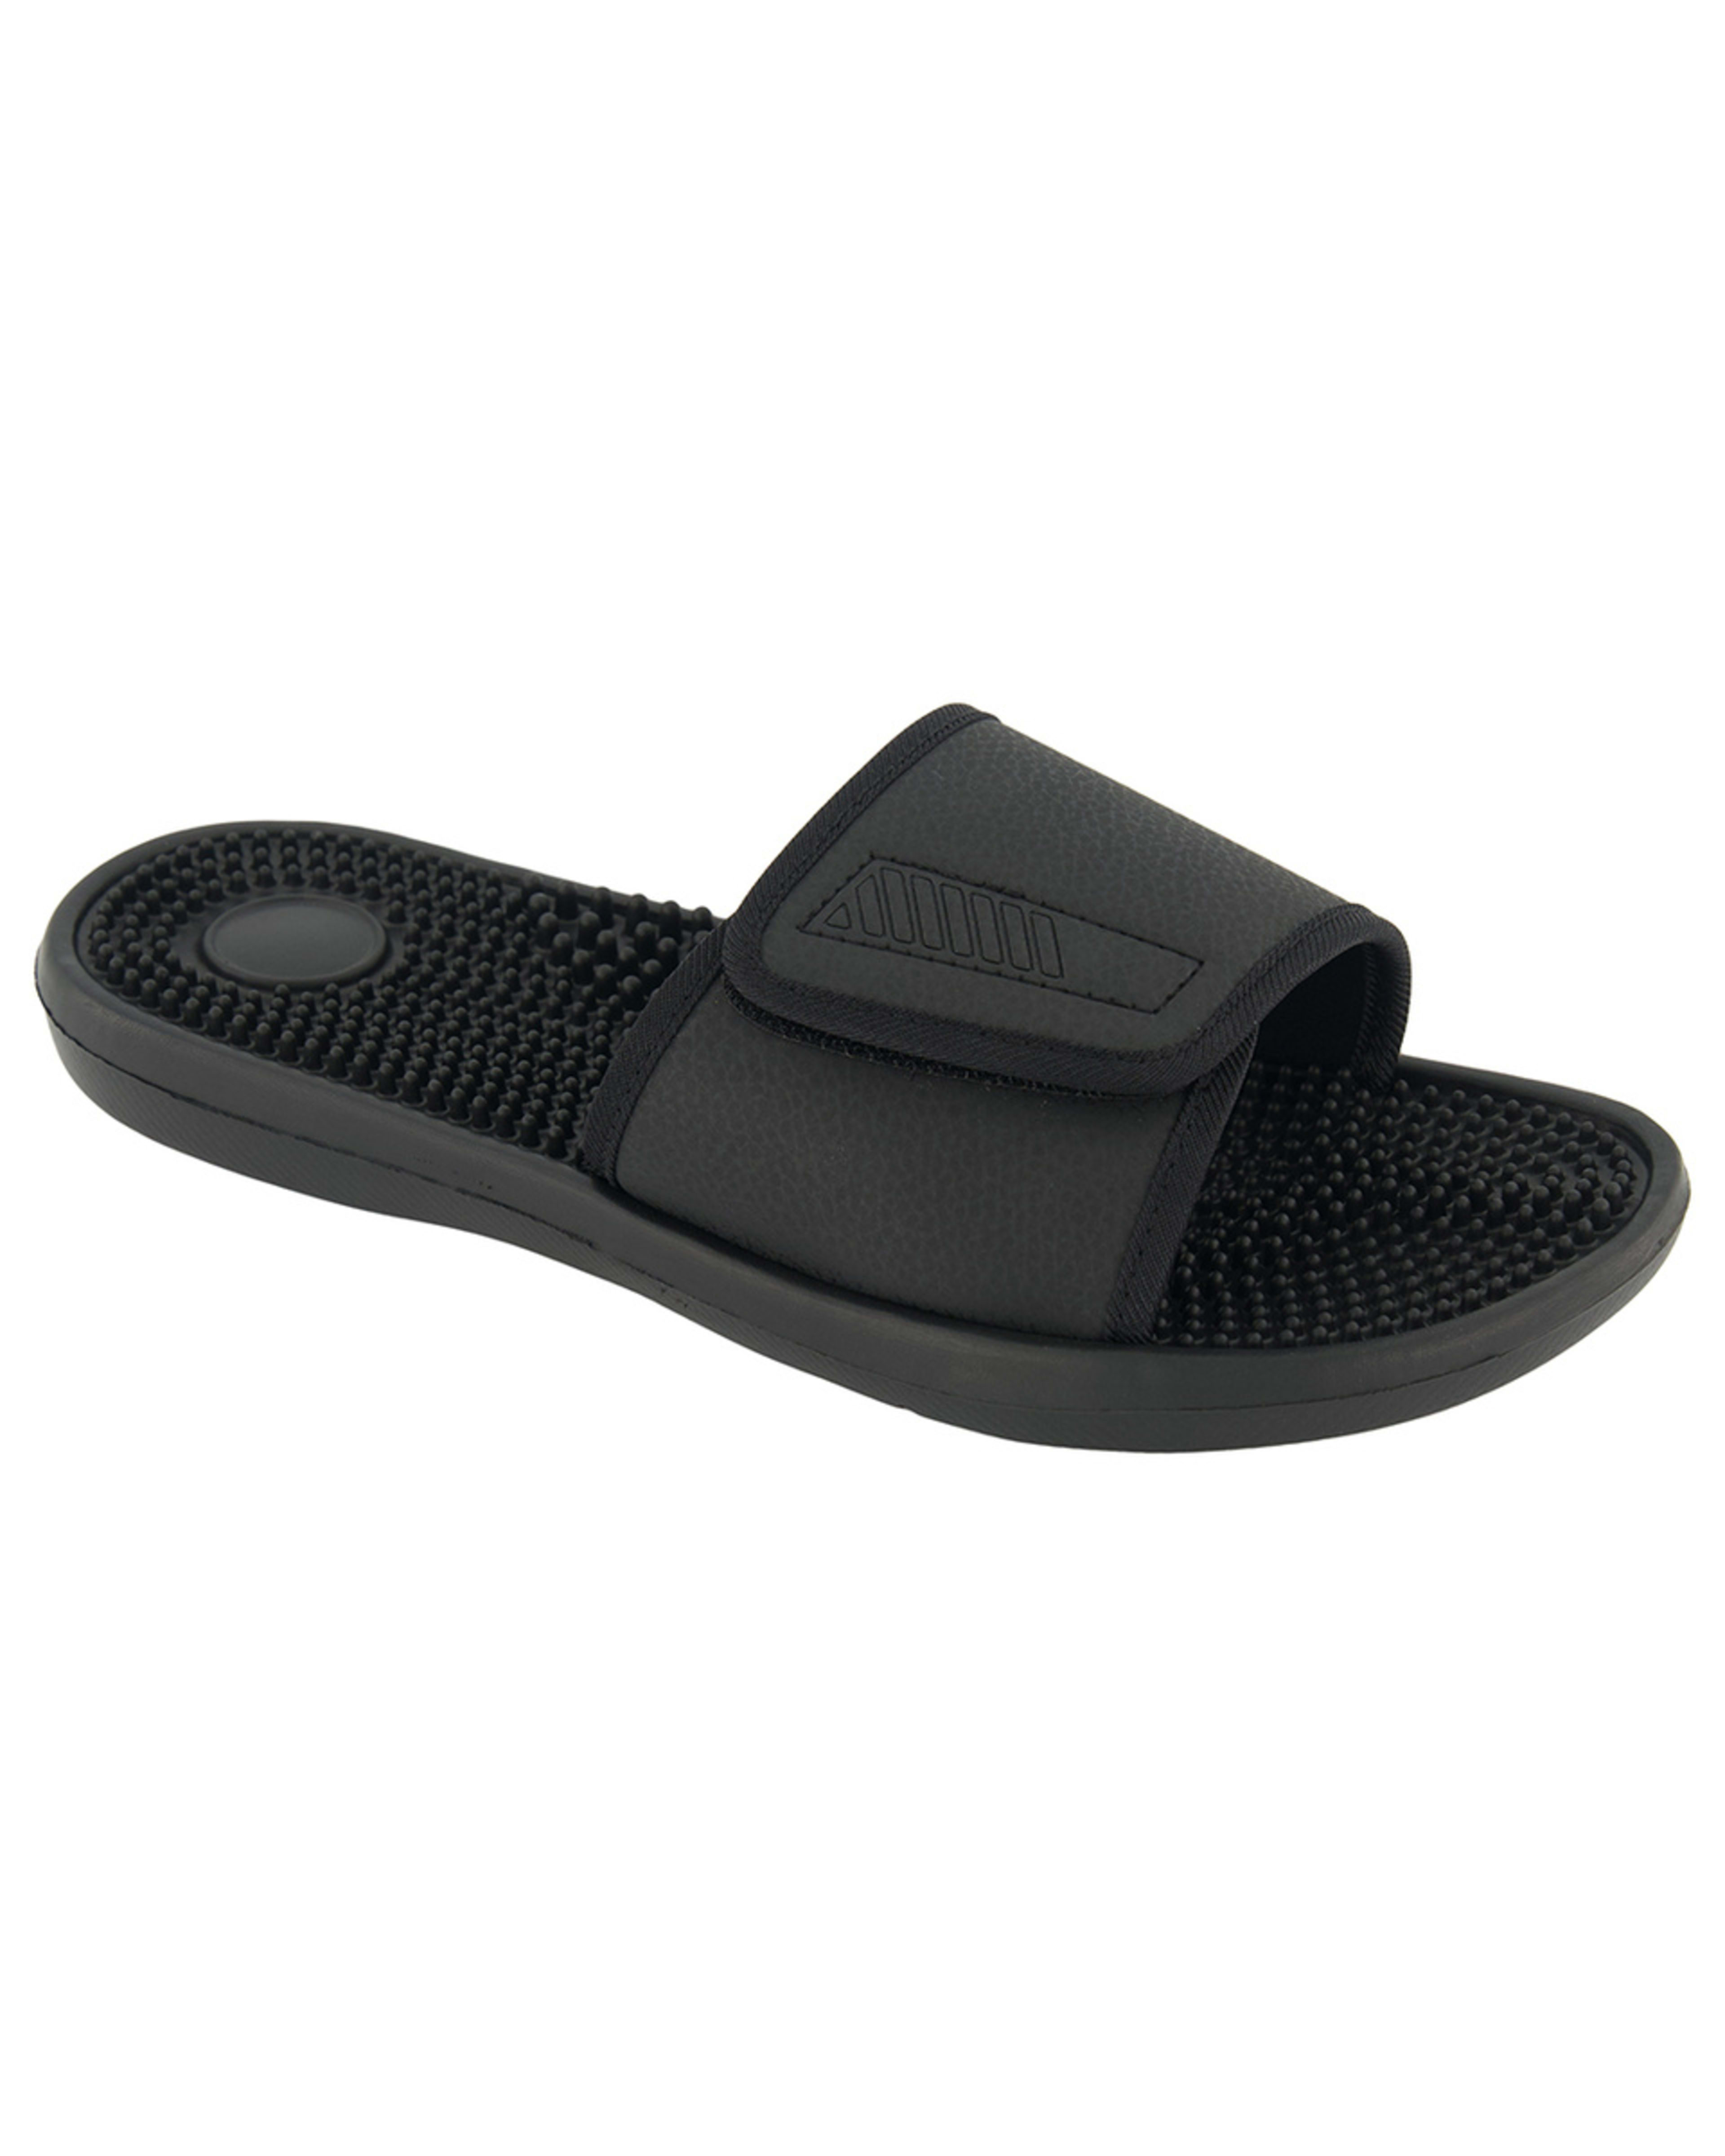 Adjustable Comfort Slides - Kmart